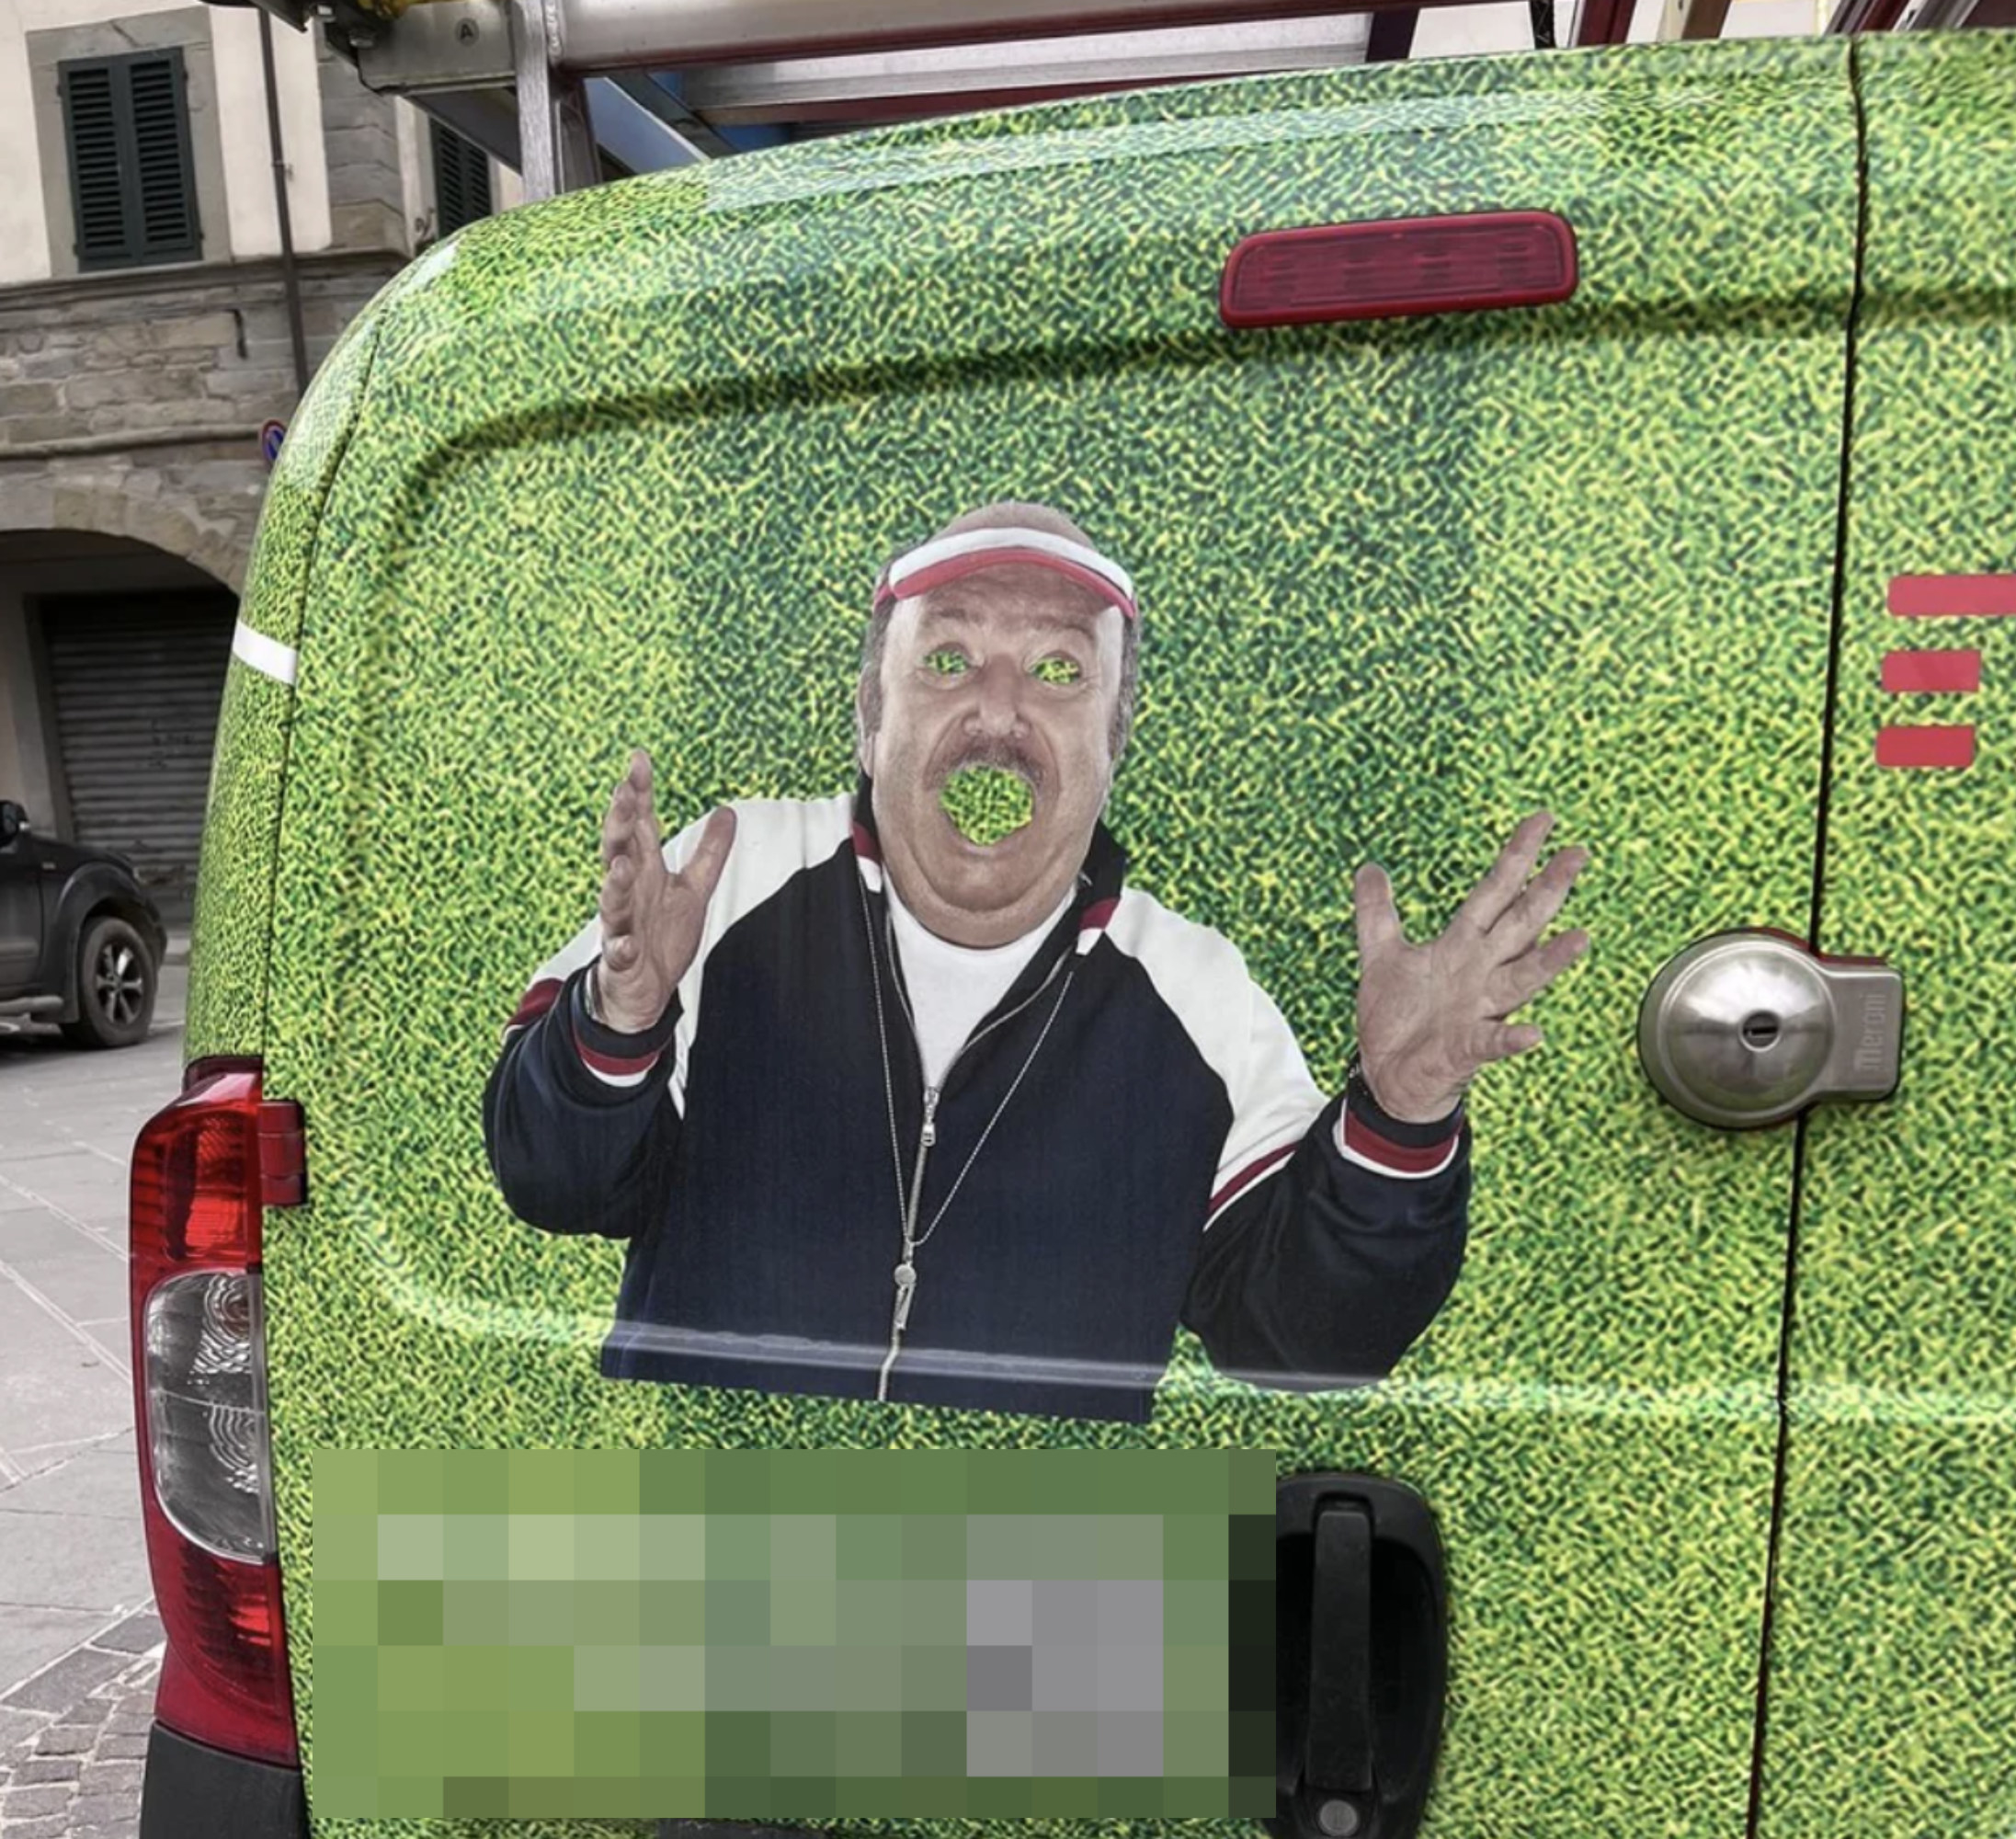 A grass design on a truck